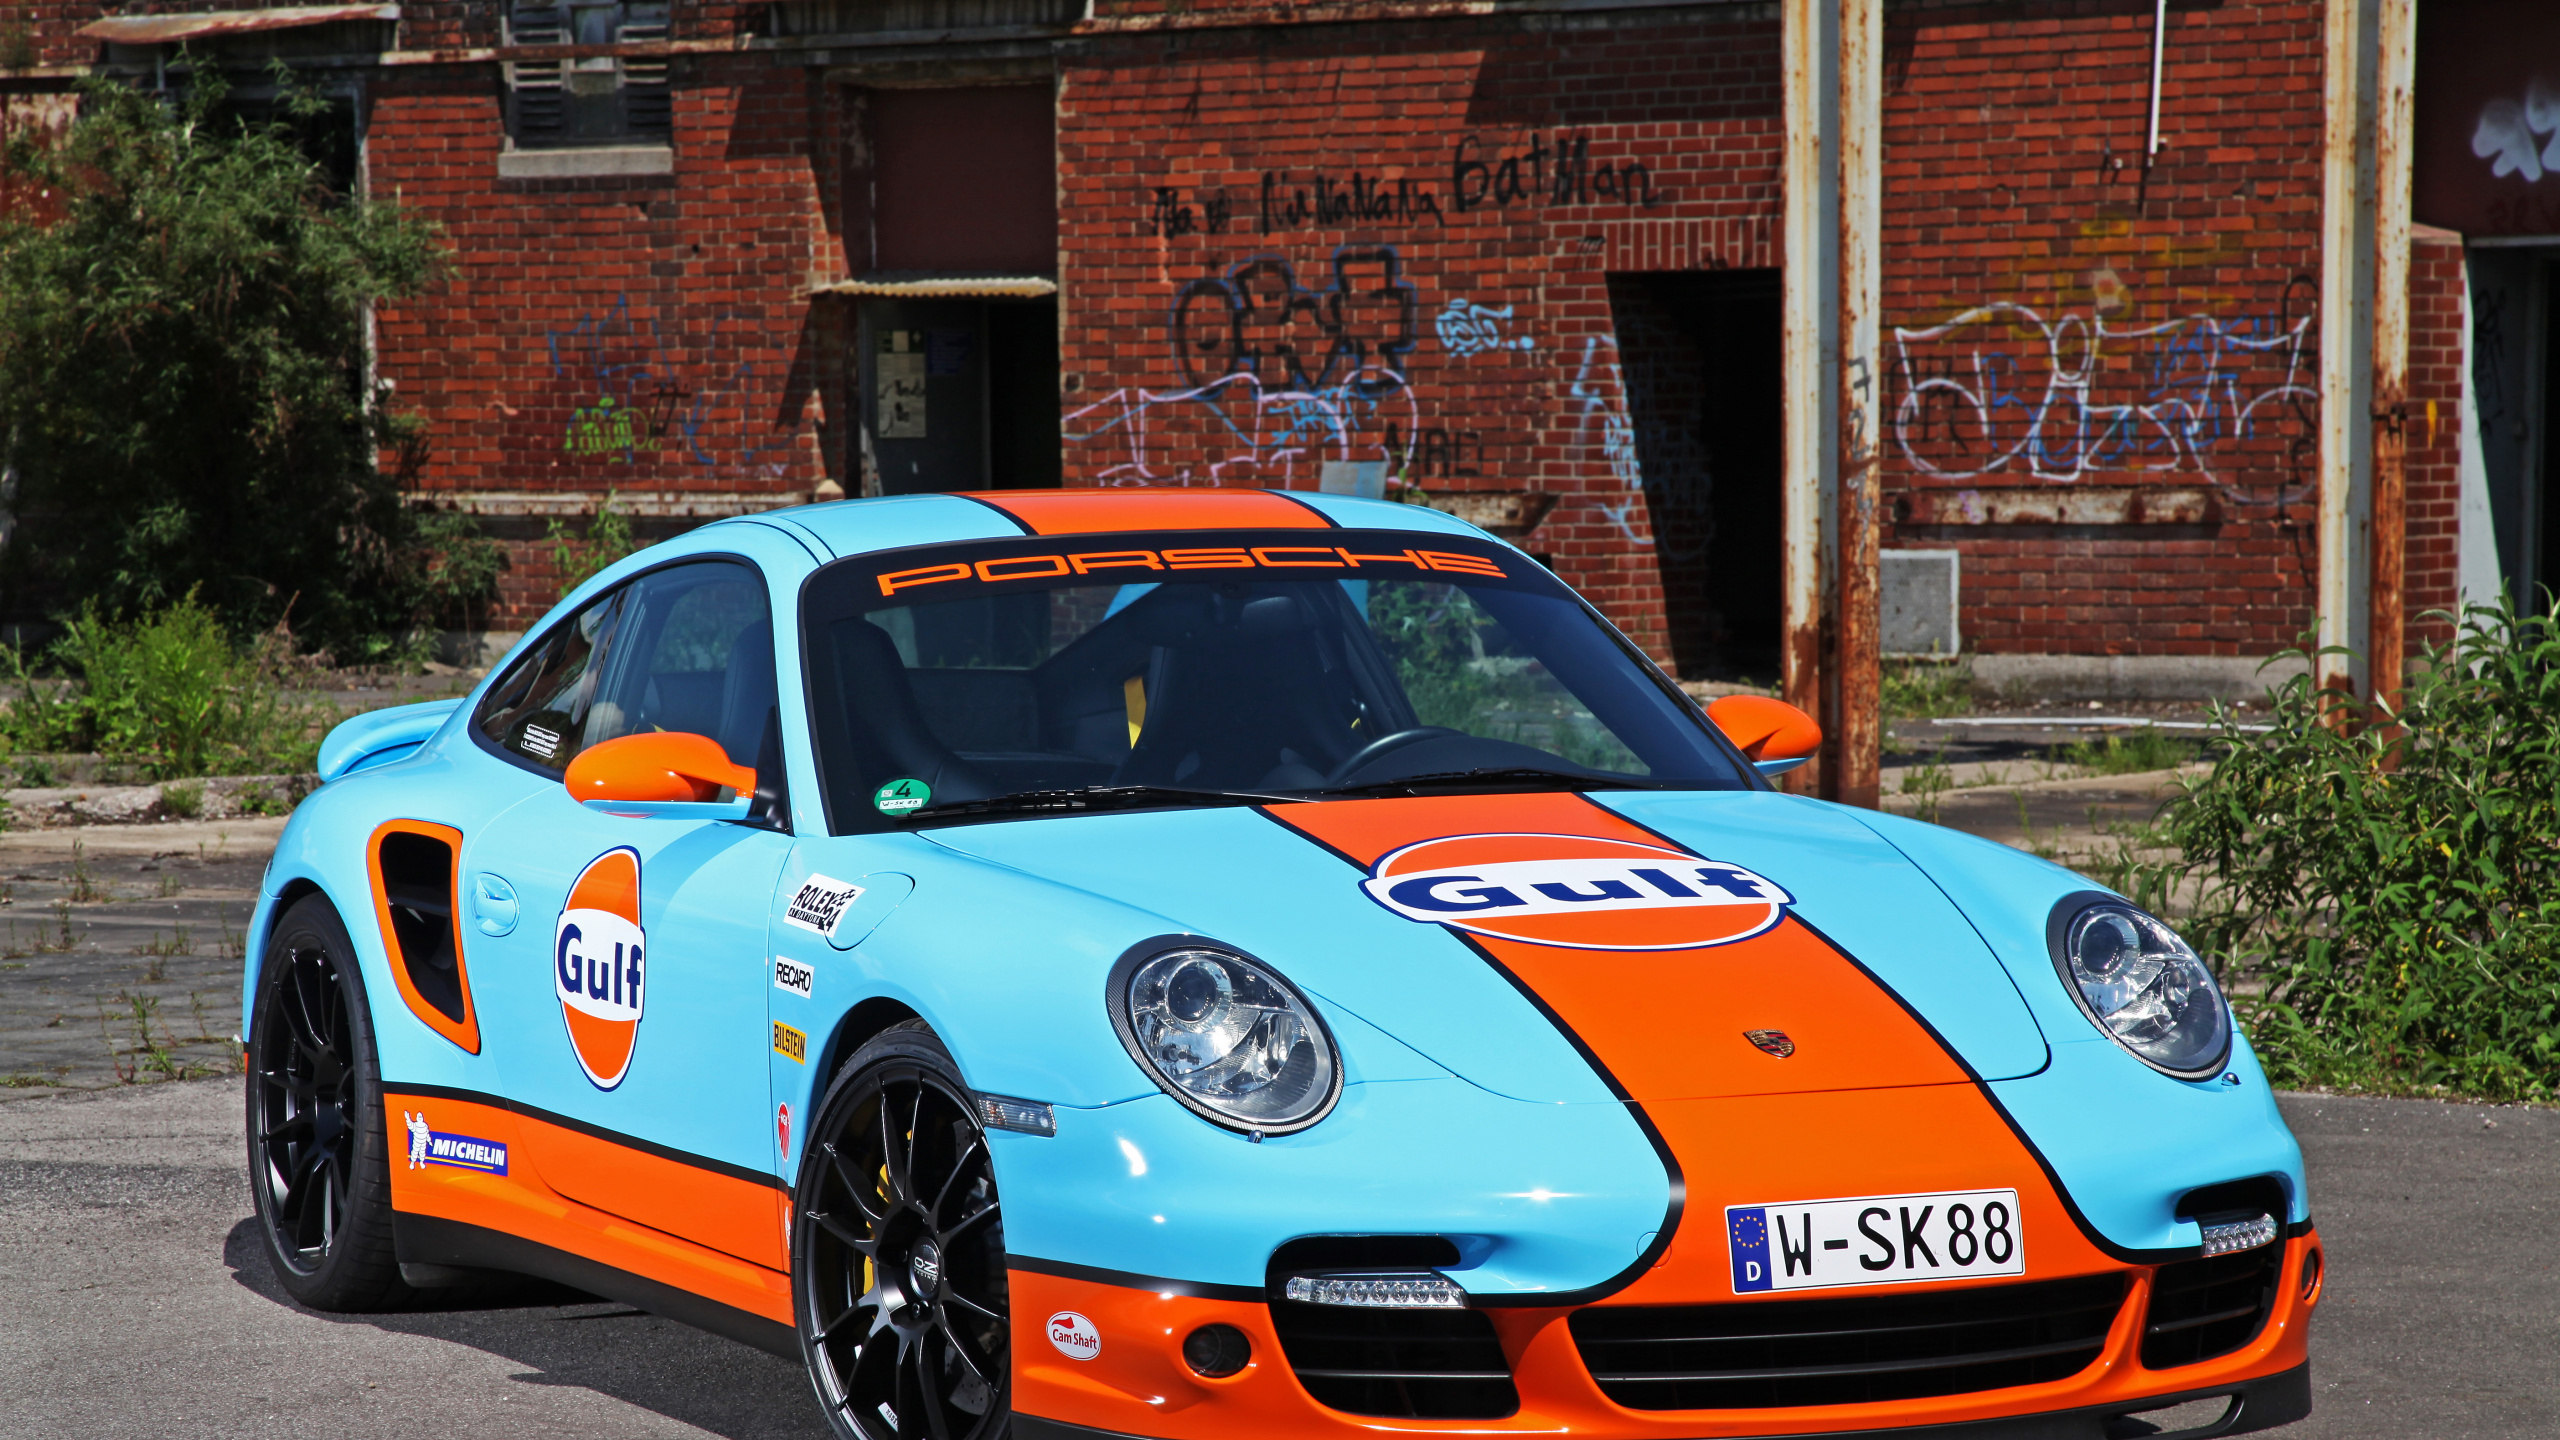 Porsche 911 Azul y Blanco Estacionado Cerca Del Edificio de Ladrillo Marrón Durante el Día. Wallpaper in 2560x1440 Resolution